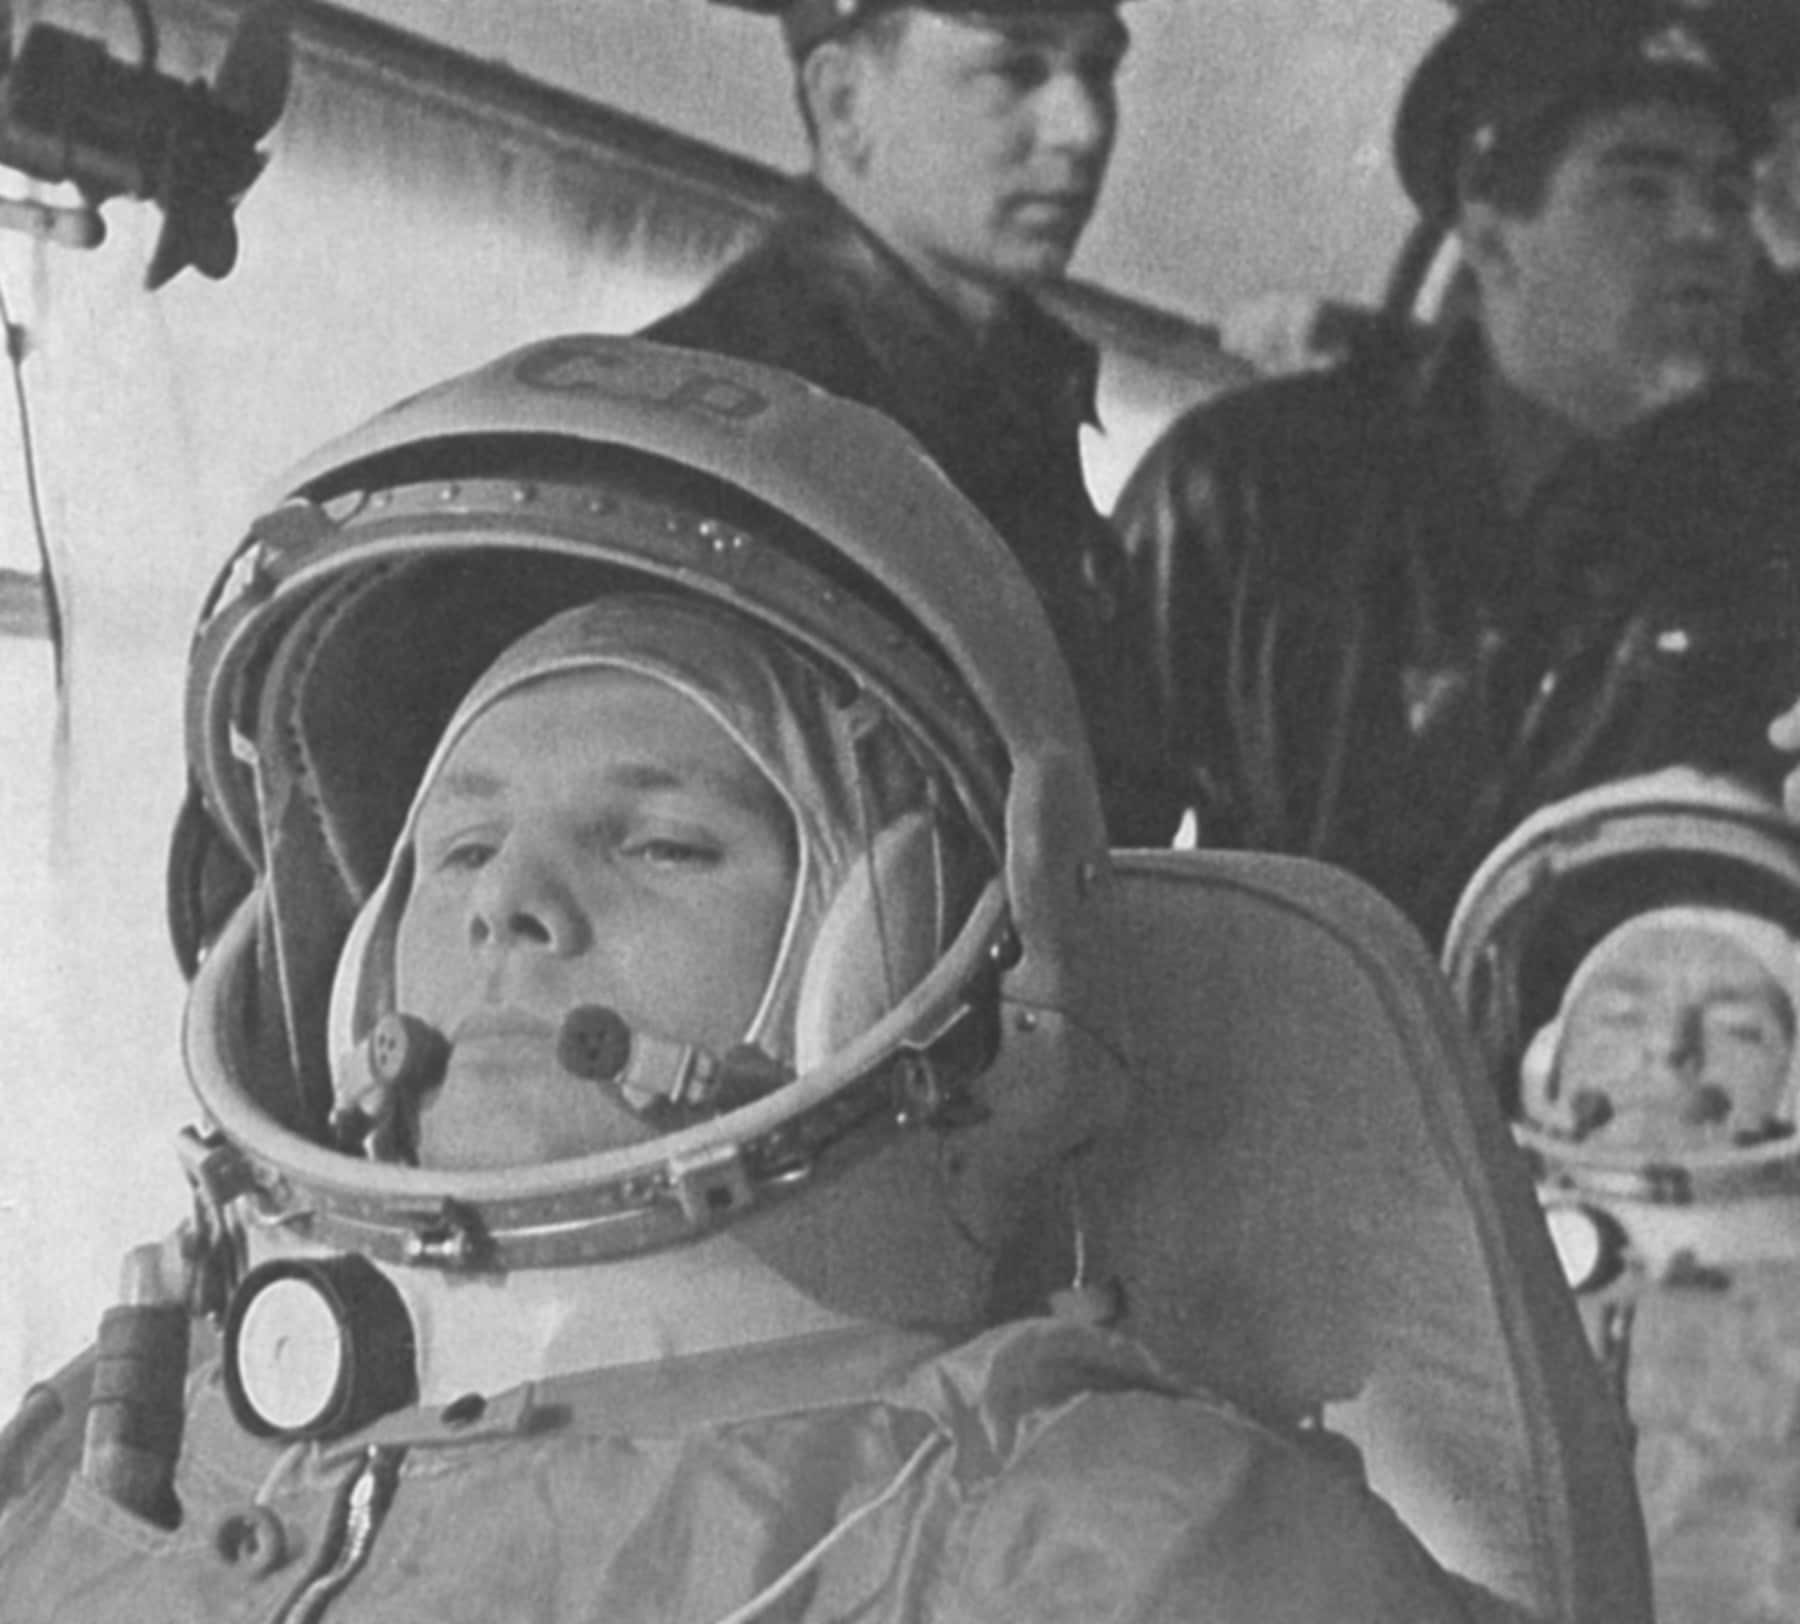 Prima dello storico volo, dietro si vede il cosmonauta German Titov, che sarà il secondo uomo a viaggiare nello spazio ad agosto del 1961